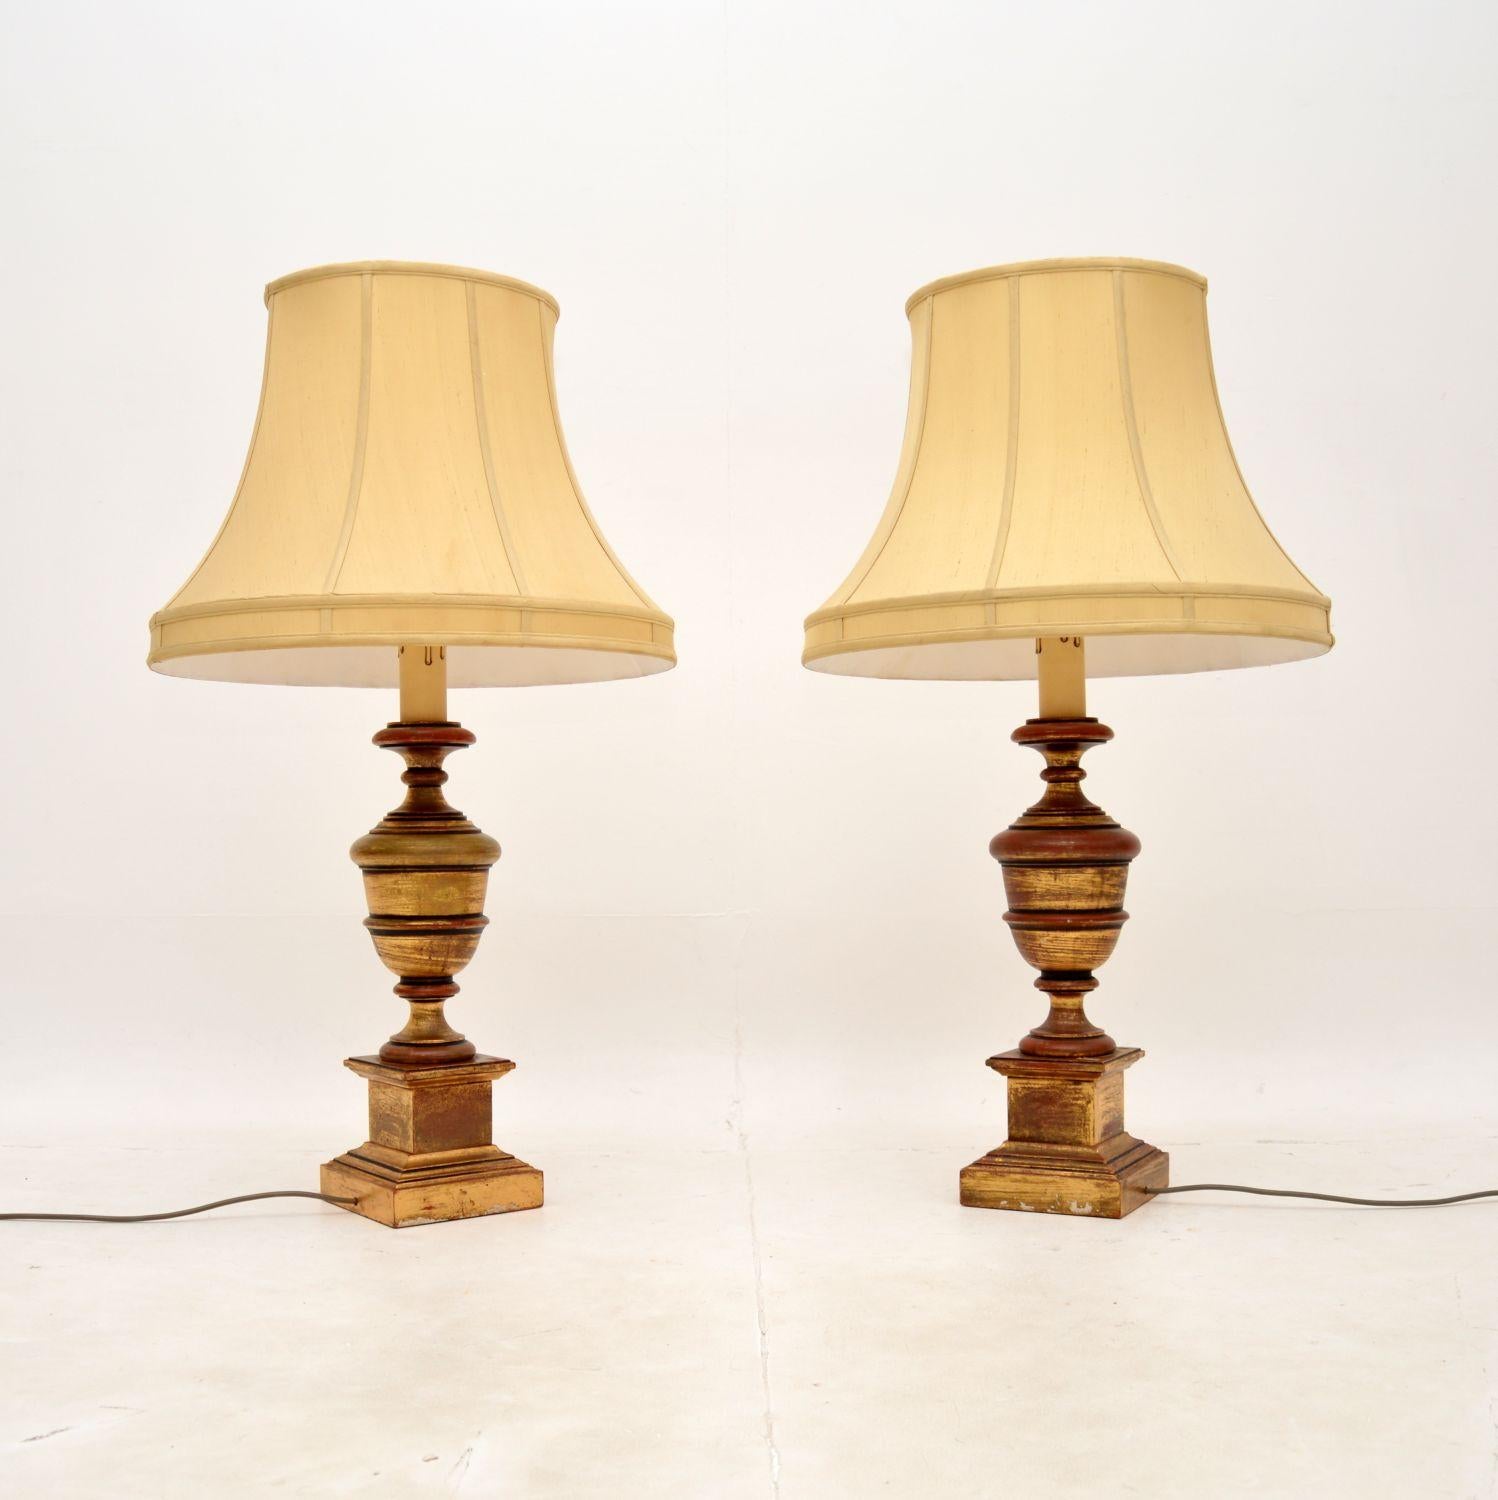 Une paire de lampes de table anciennes en bois doré absolument stupéfiante, grande et impressionnante. Fabriqués en Angleterre, ils datent des années 1930-50.

La qualité est exceptionnelle, ils sont fabriqués en bois massif magnifiquement tourné et